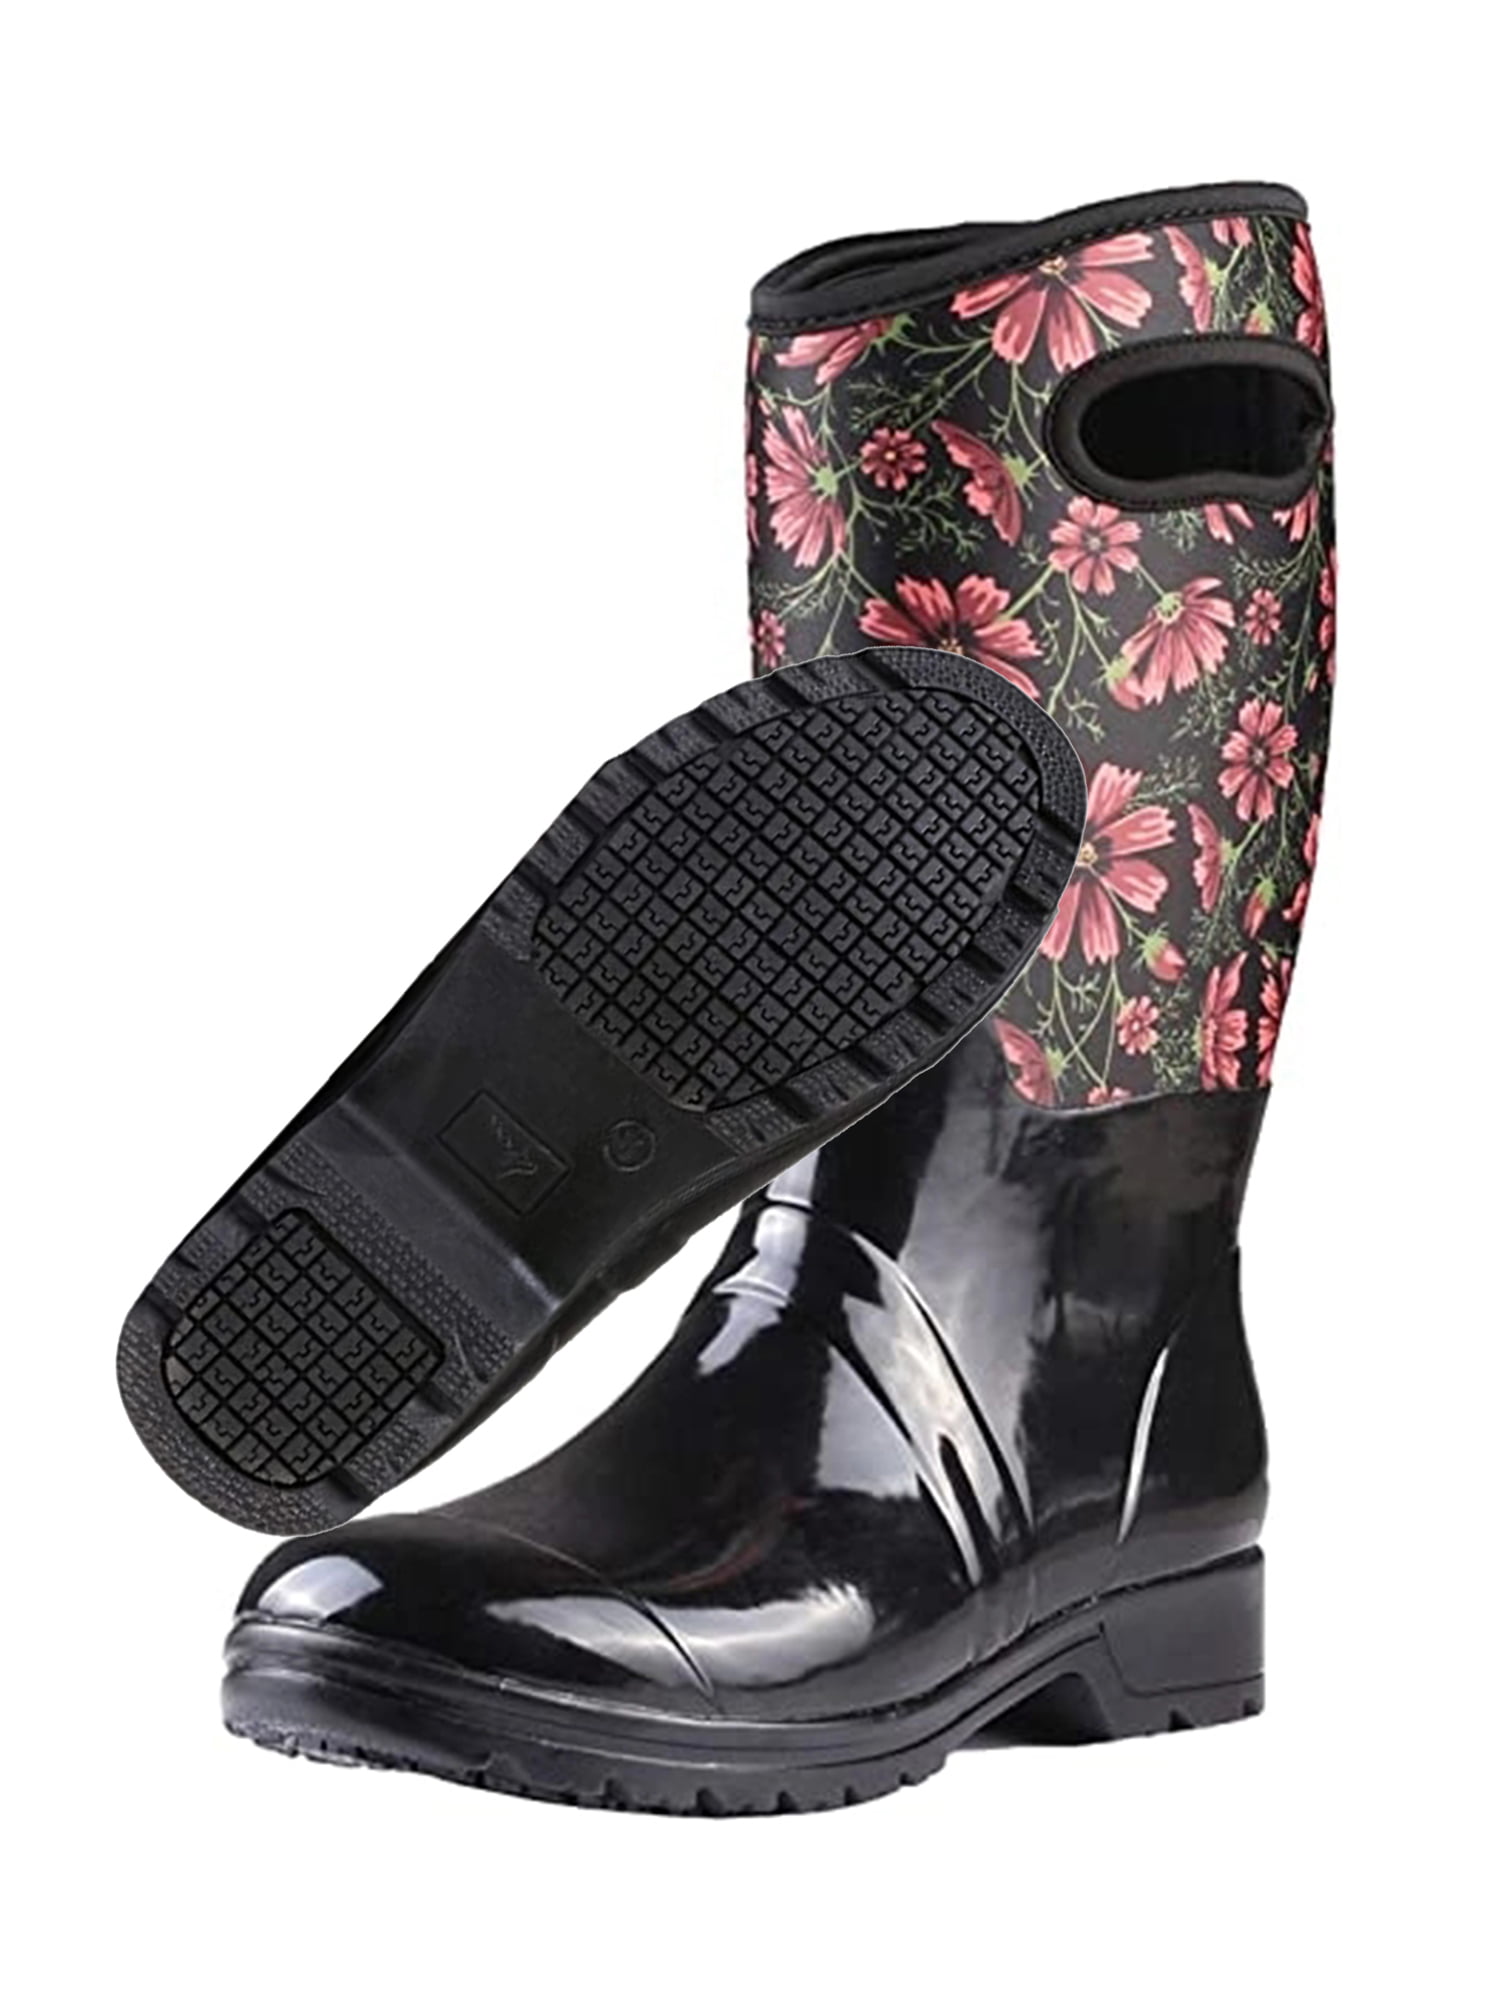 Own Shoe - Neoprene Rubber Waterproof Rain Boots for Women Mid-Calf ...